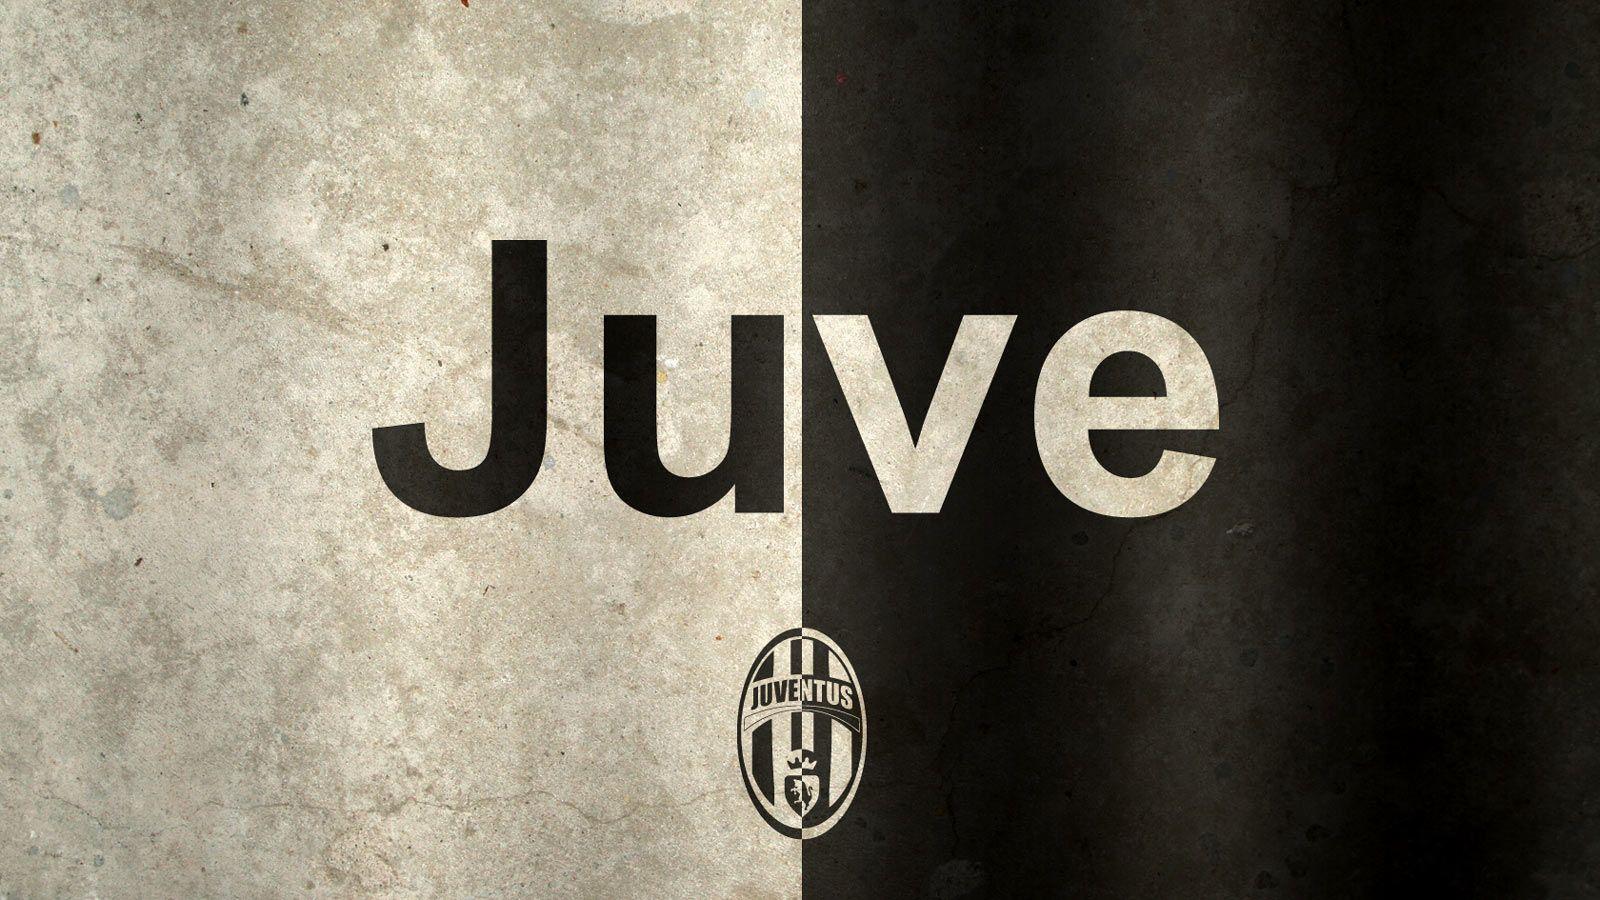 Juventus Background